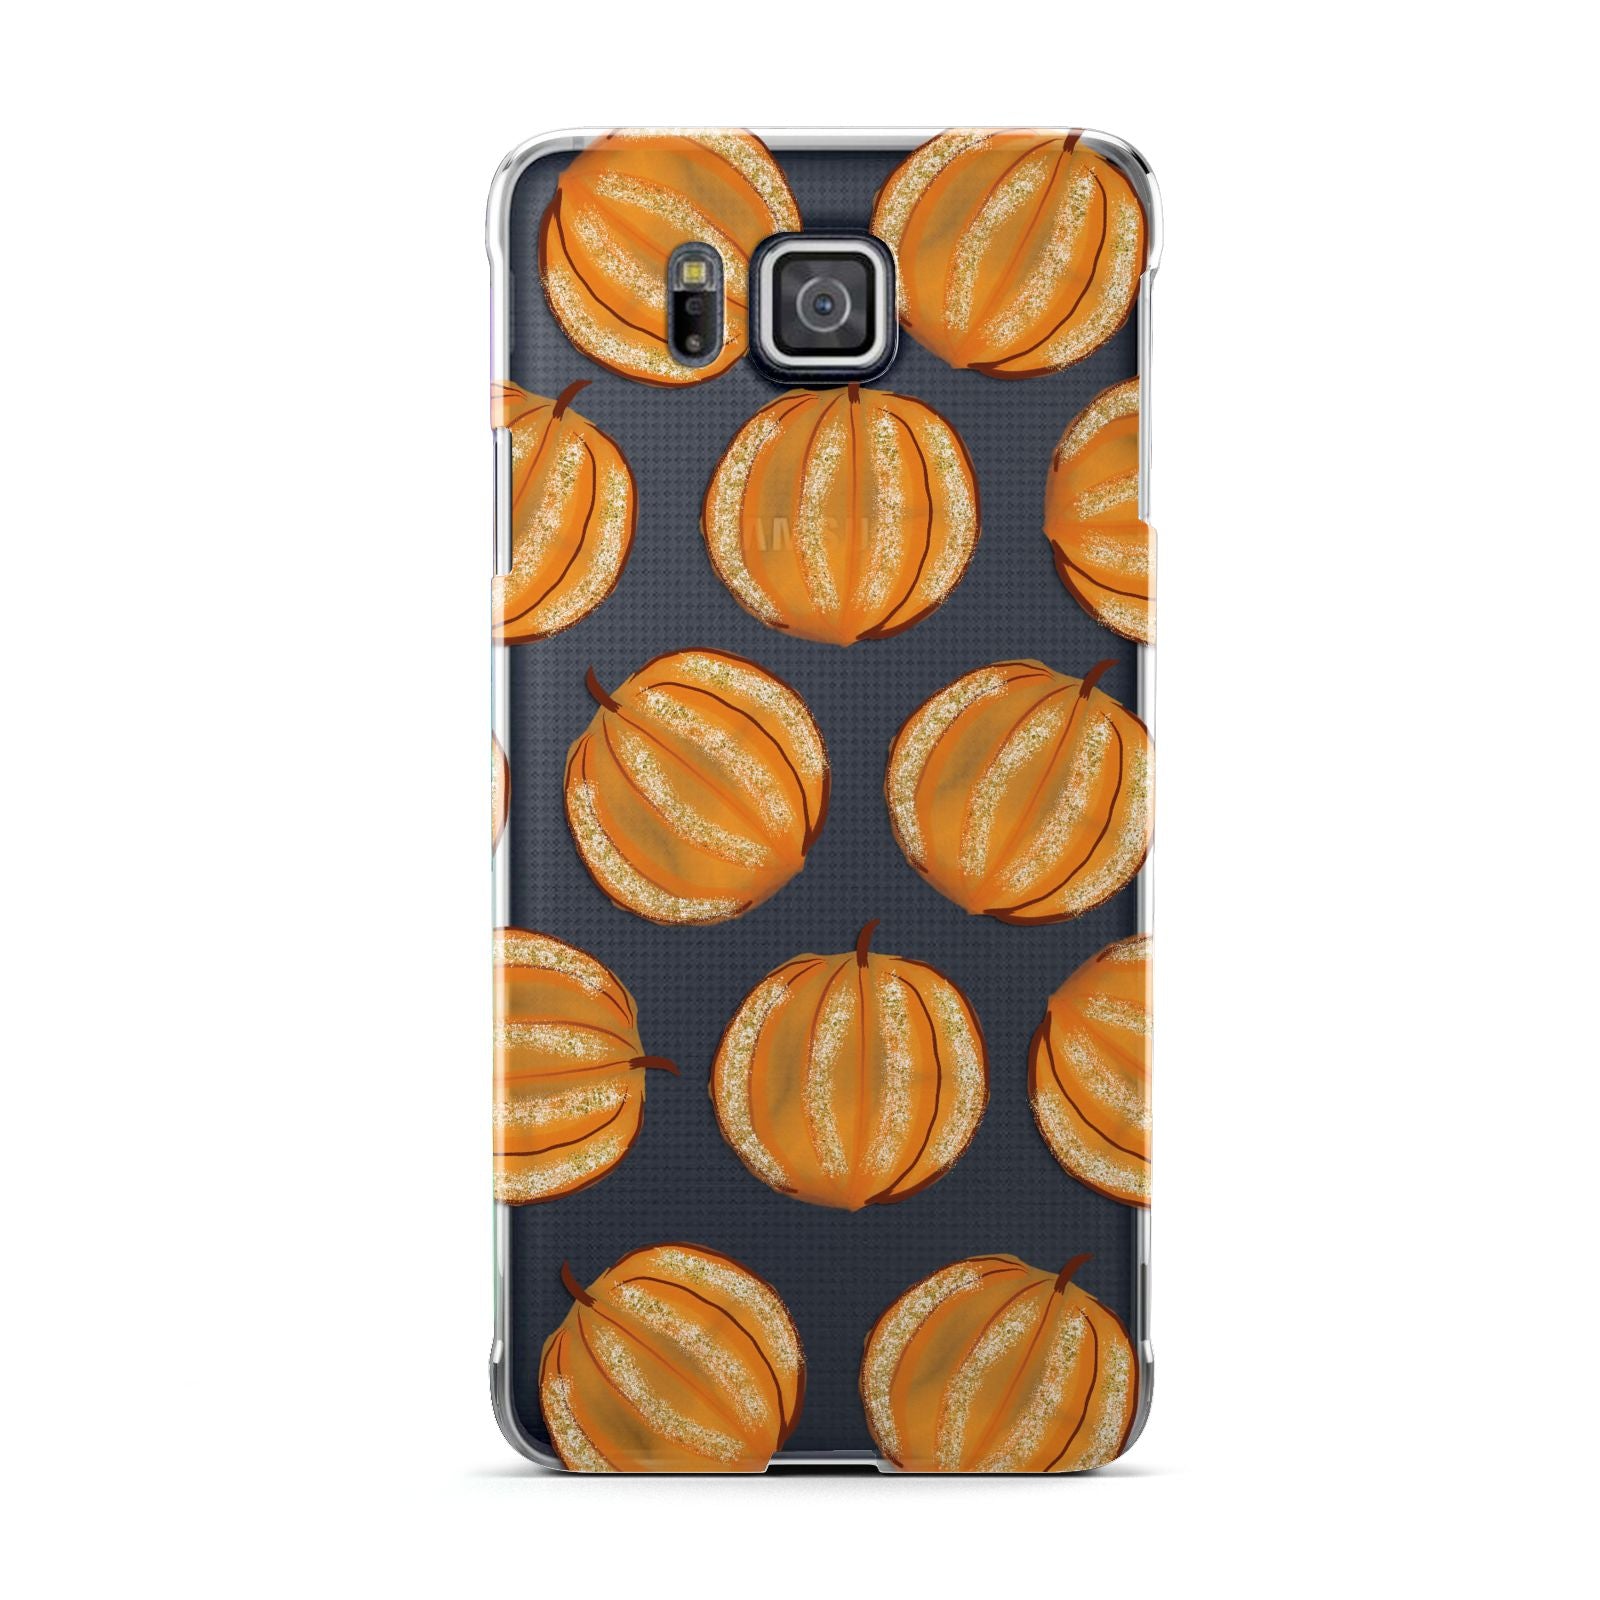 Pumpkin Halloween Samsung Galaxy Alpha Case